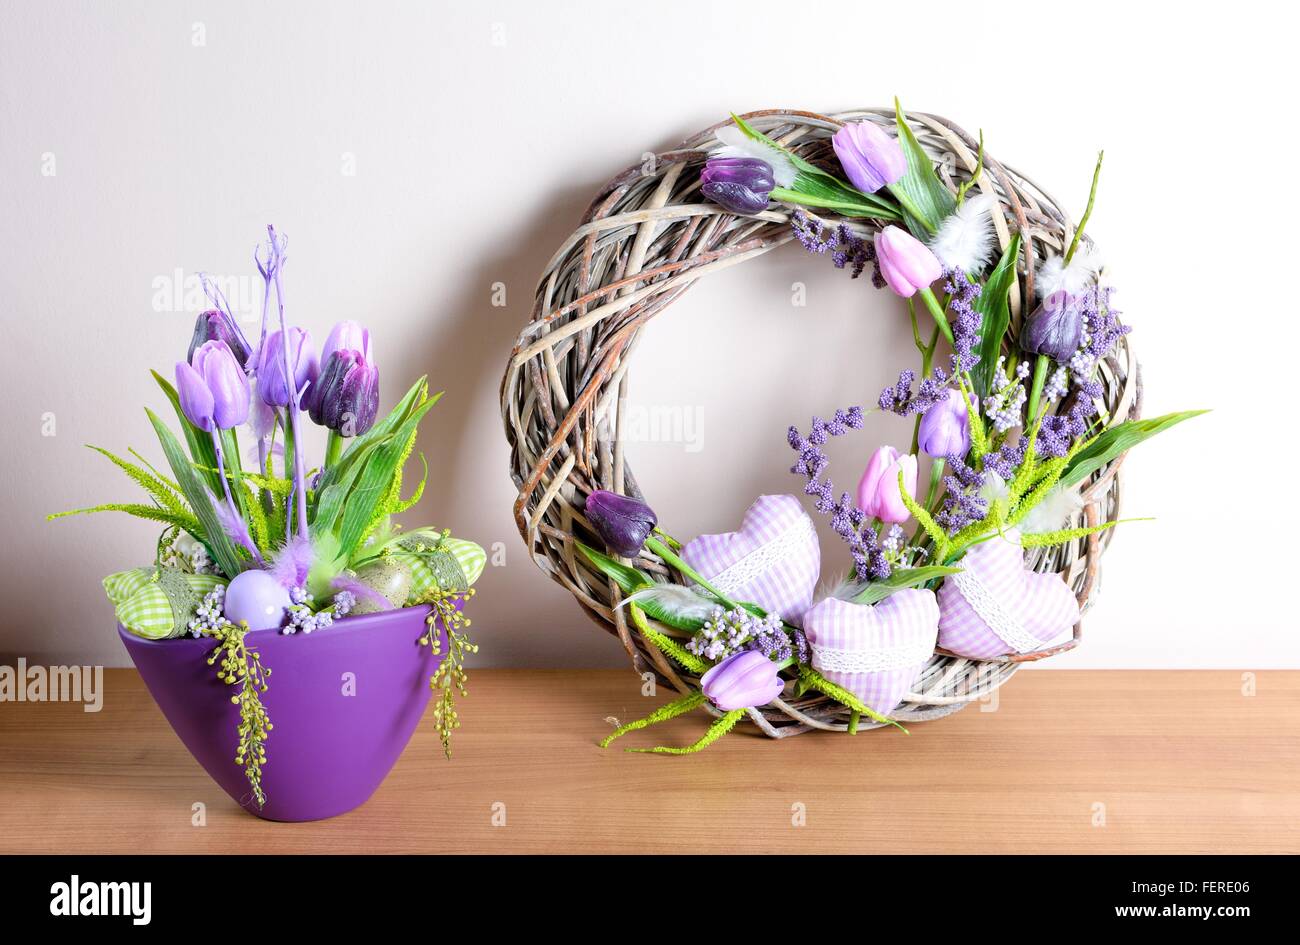 Decoración floral de Pascua en la mesa. Acuerdo de fabricación casera. Foto de stock